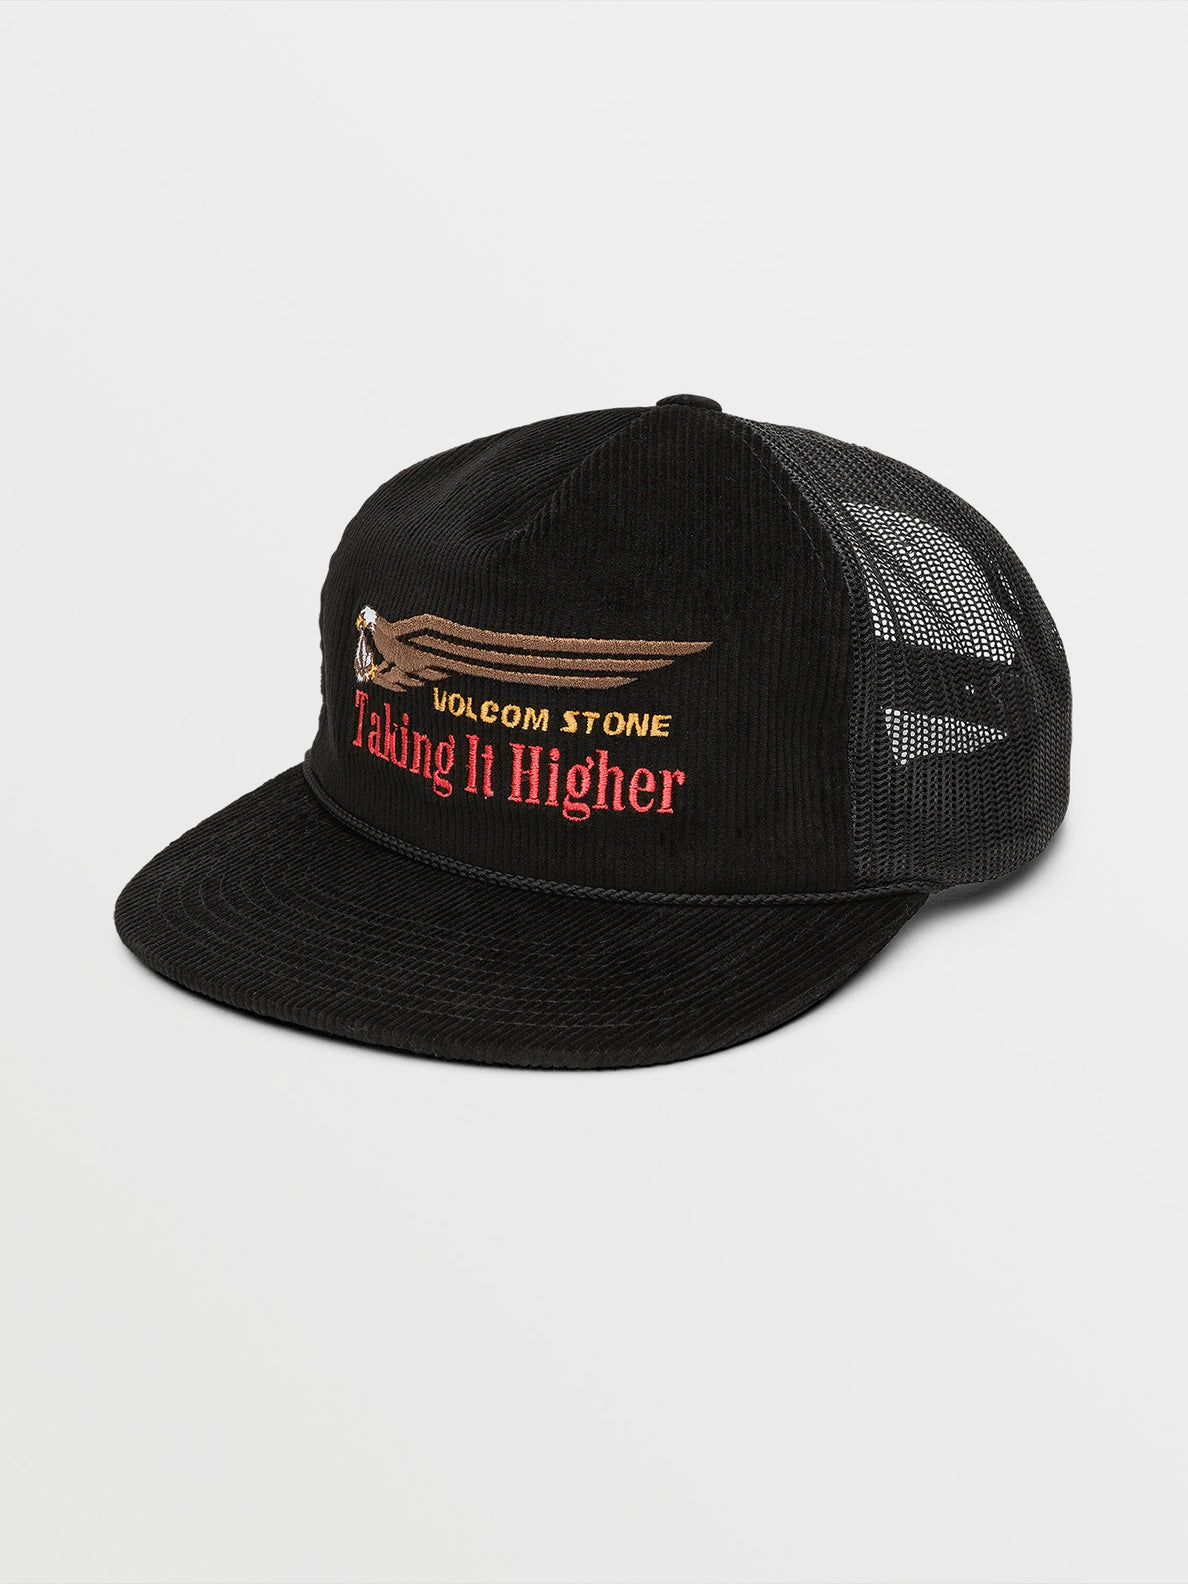 Take It Higher Trucker Hat - Black